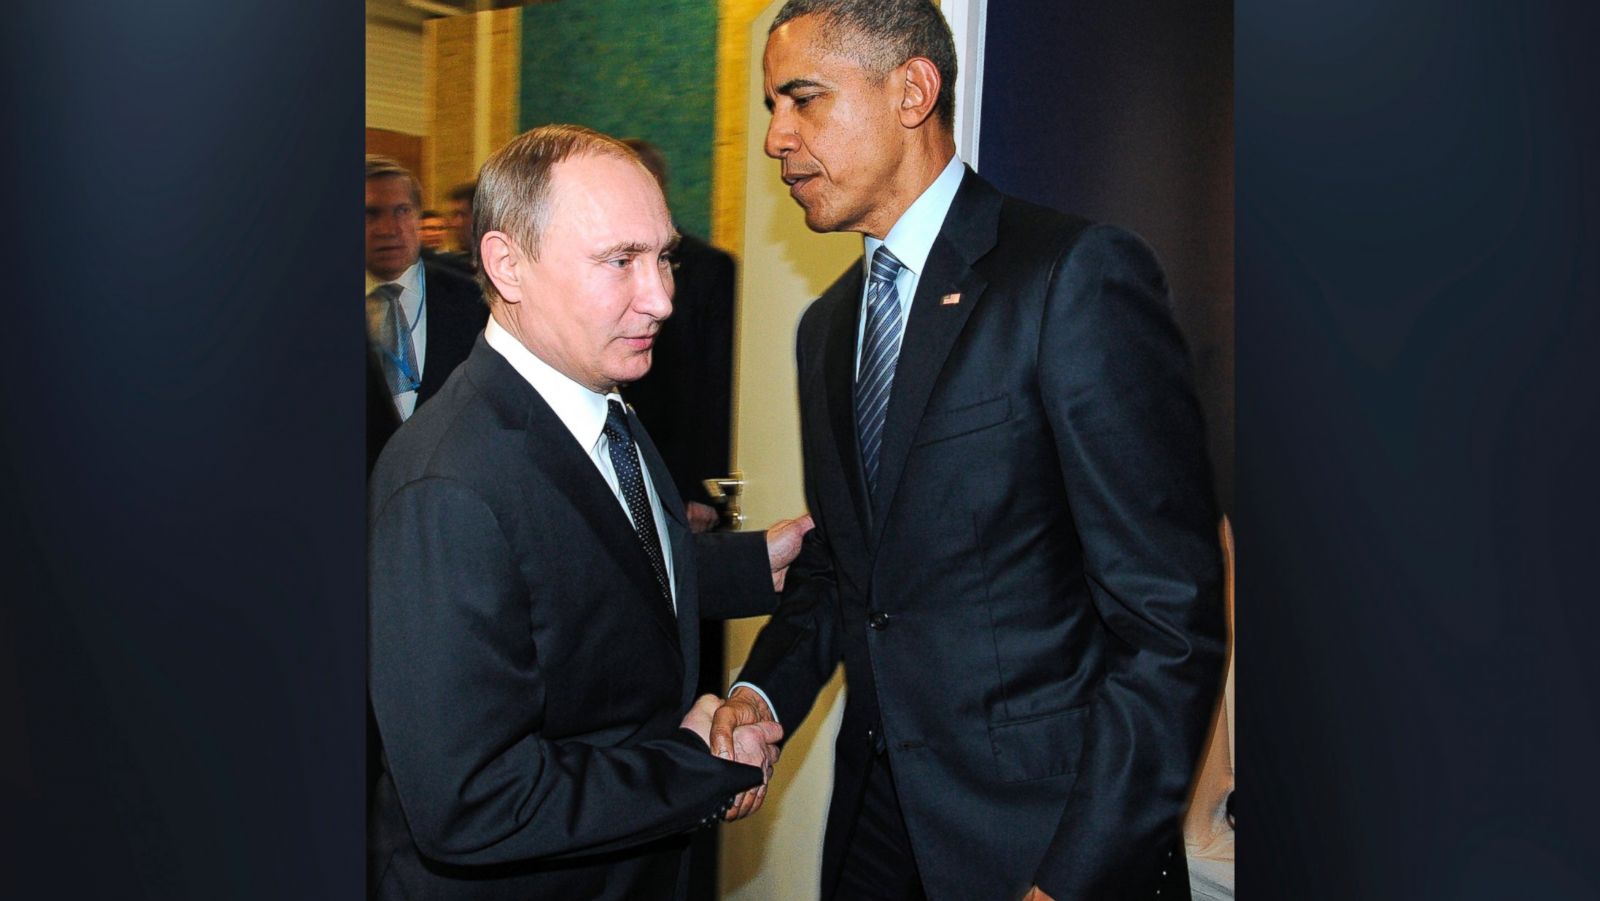 ap_obama_putin_handshake_float_jc_151201_16x9_1600.jpg